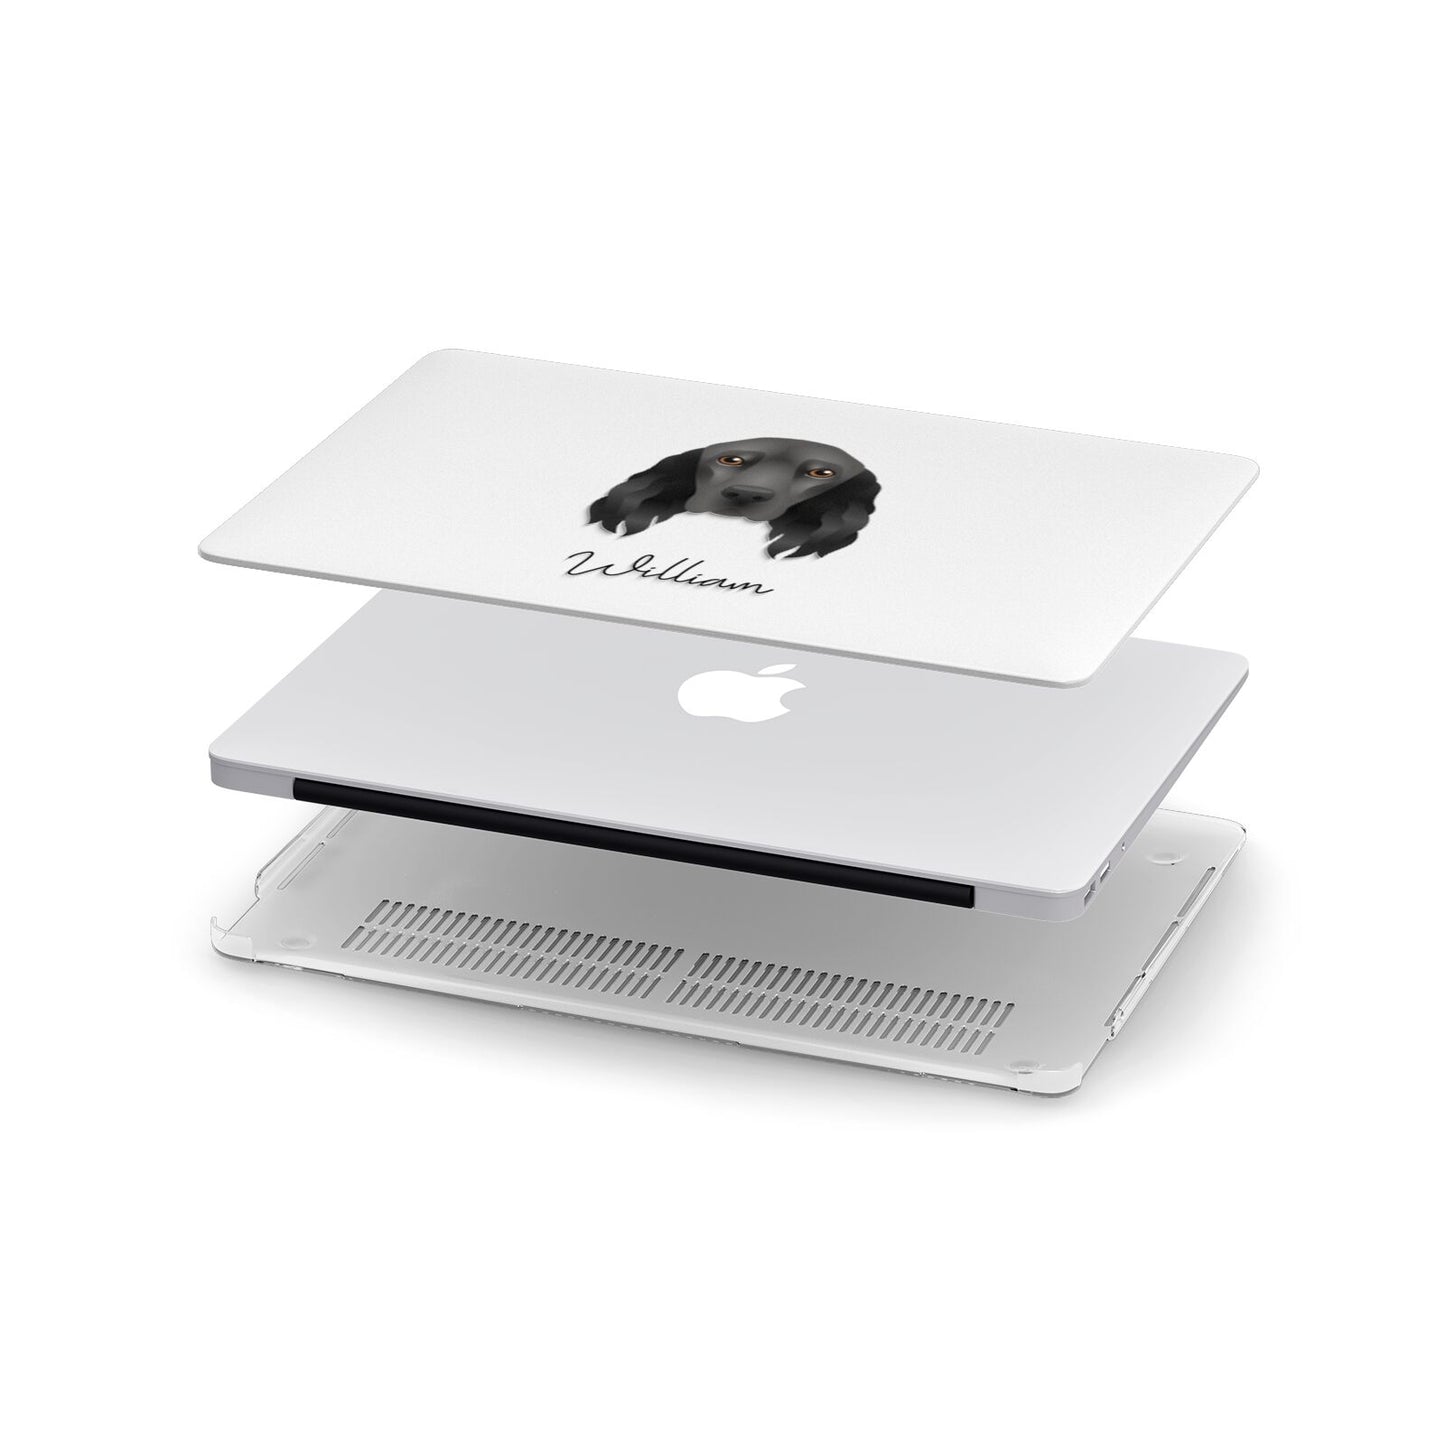 Field Spaniel Personalised Apple MacBook Case in Detail